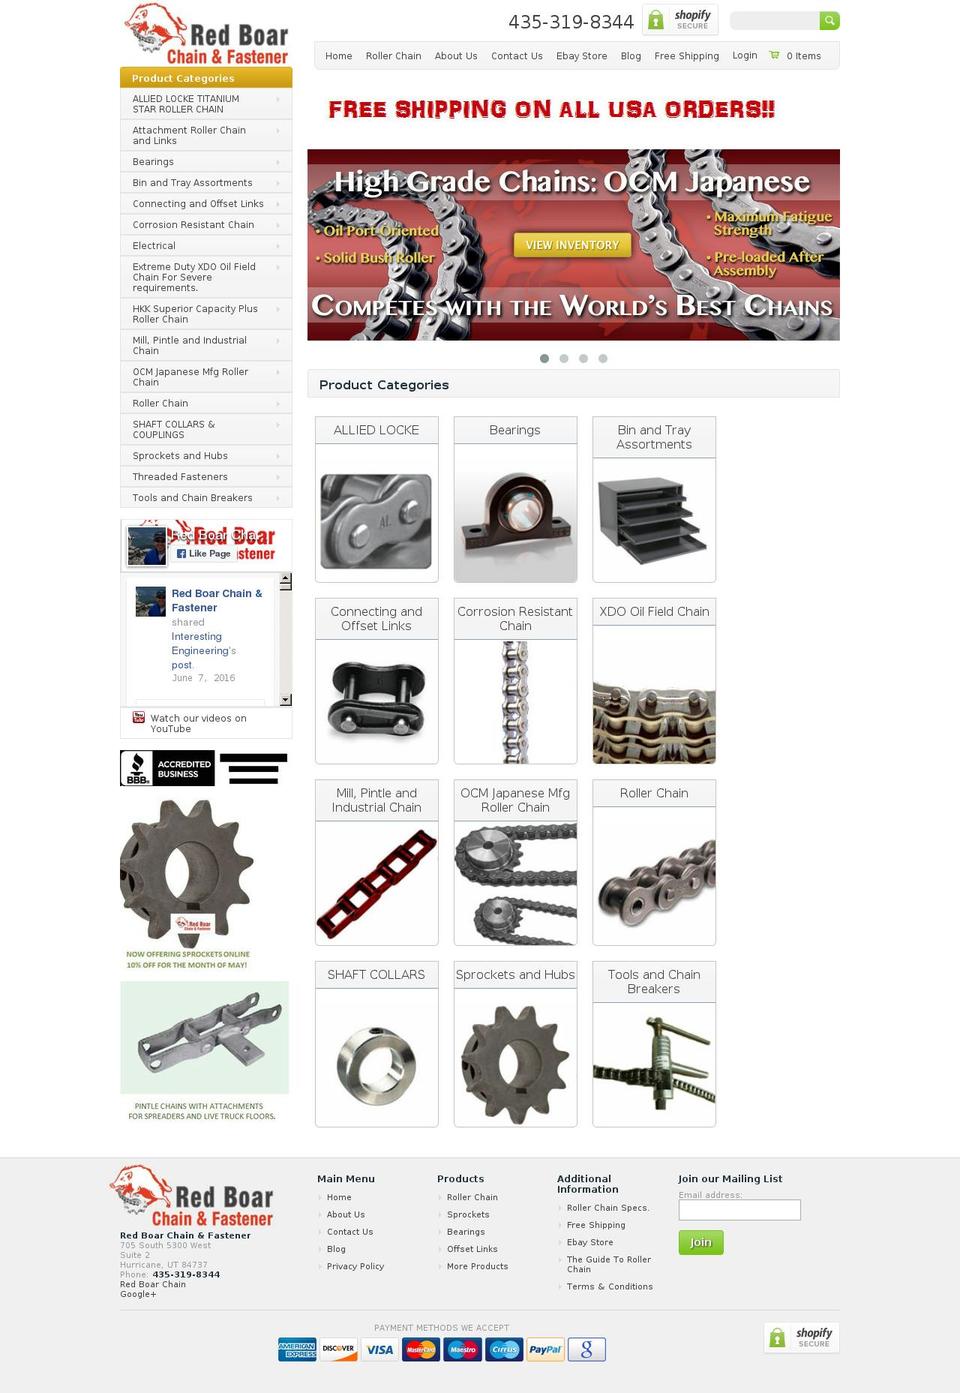 rollerchainsizechart.com shopify website screenshot